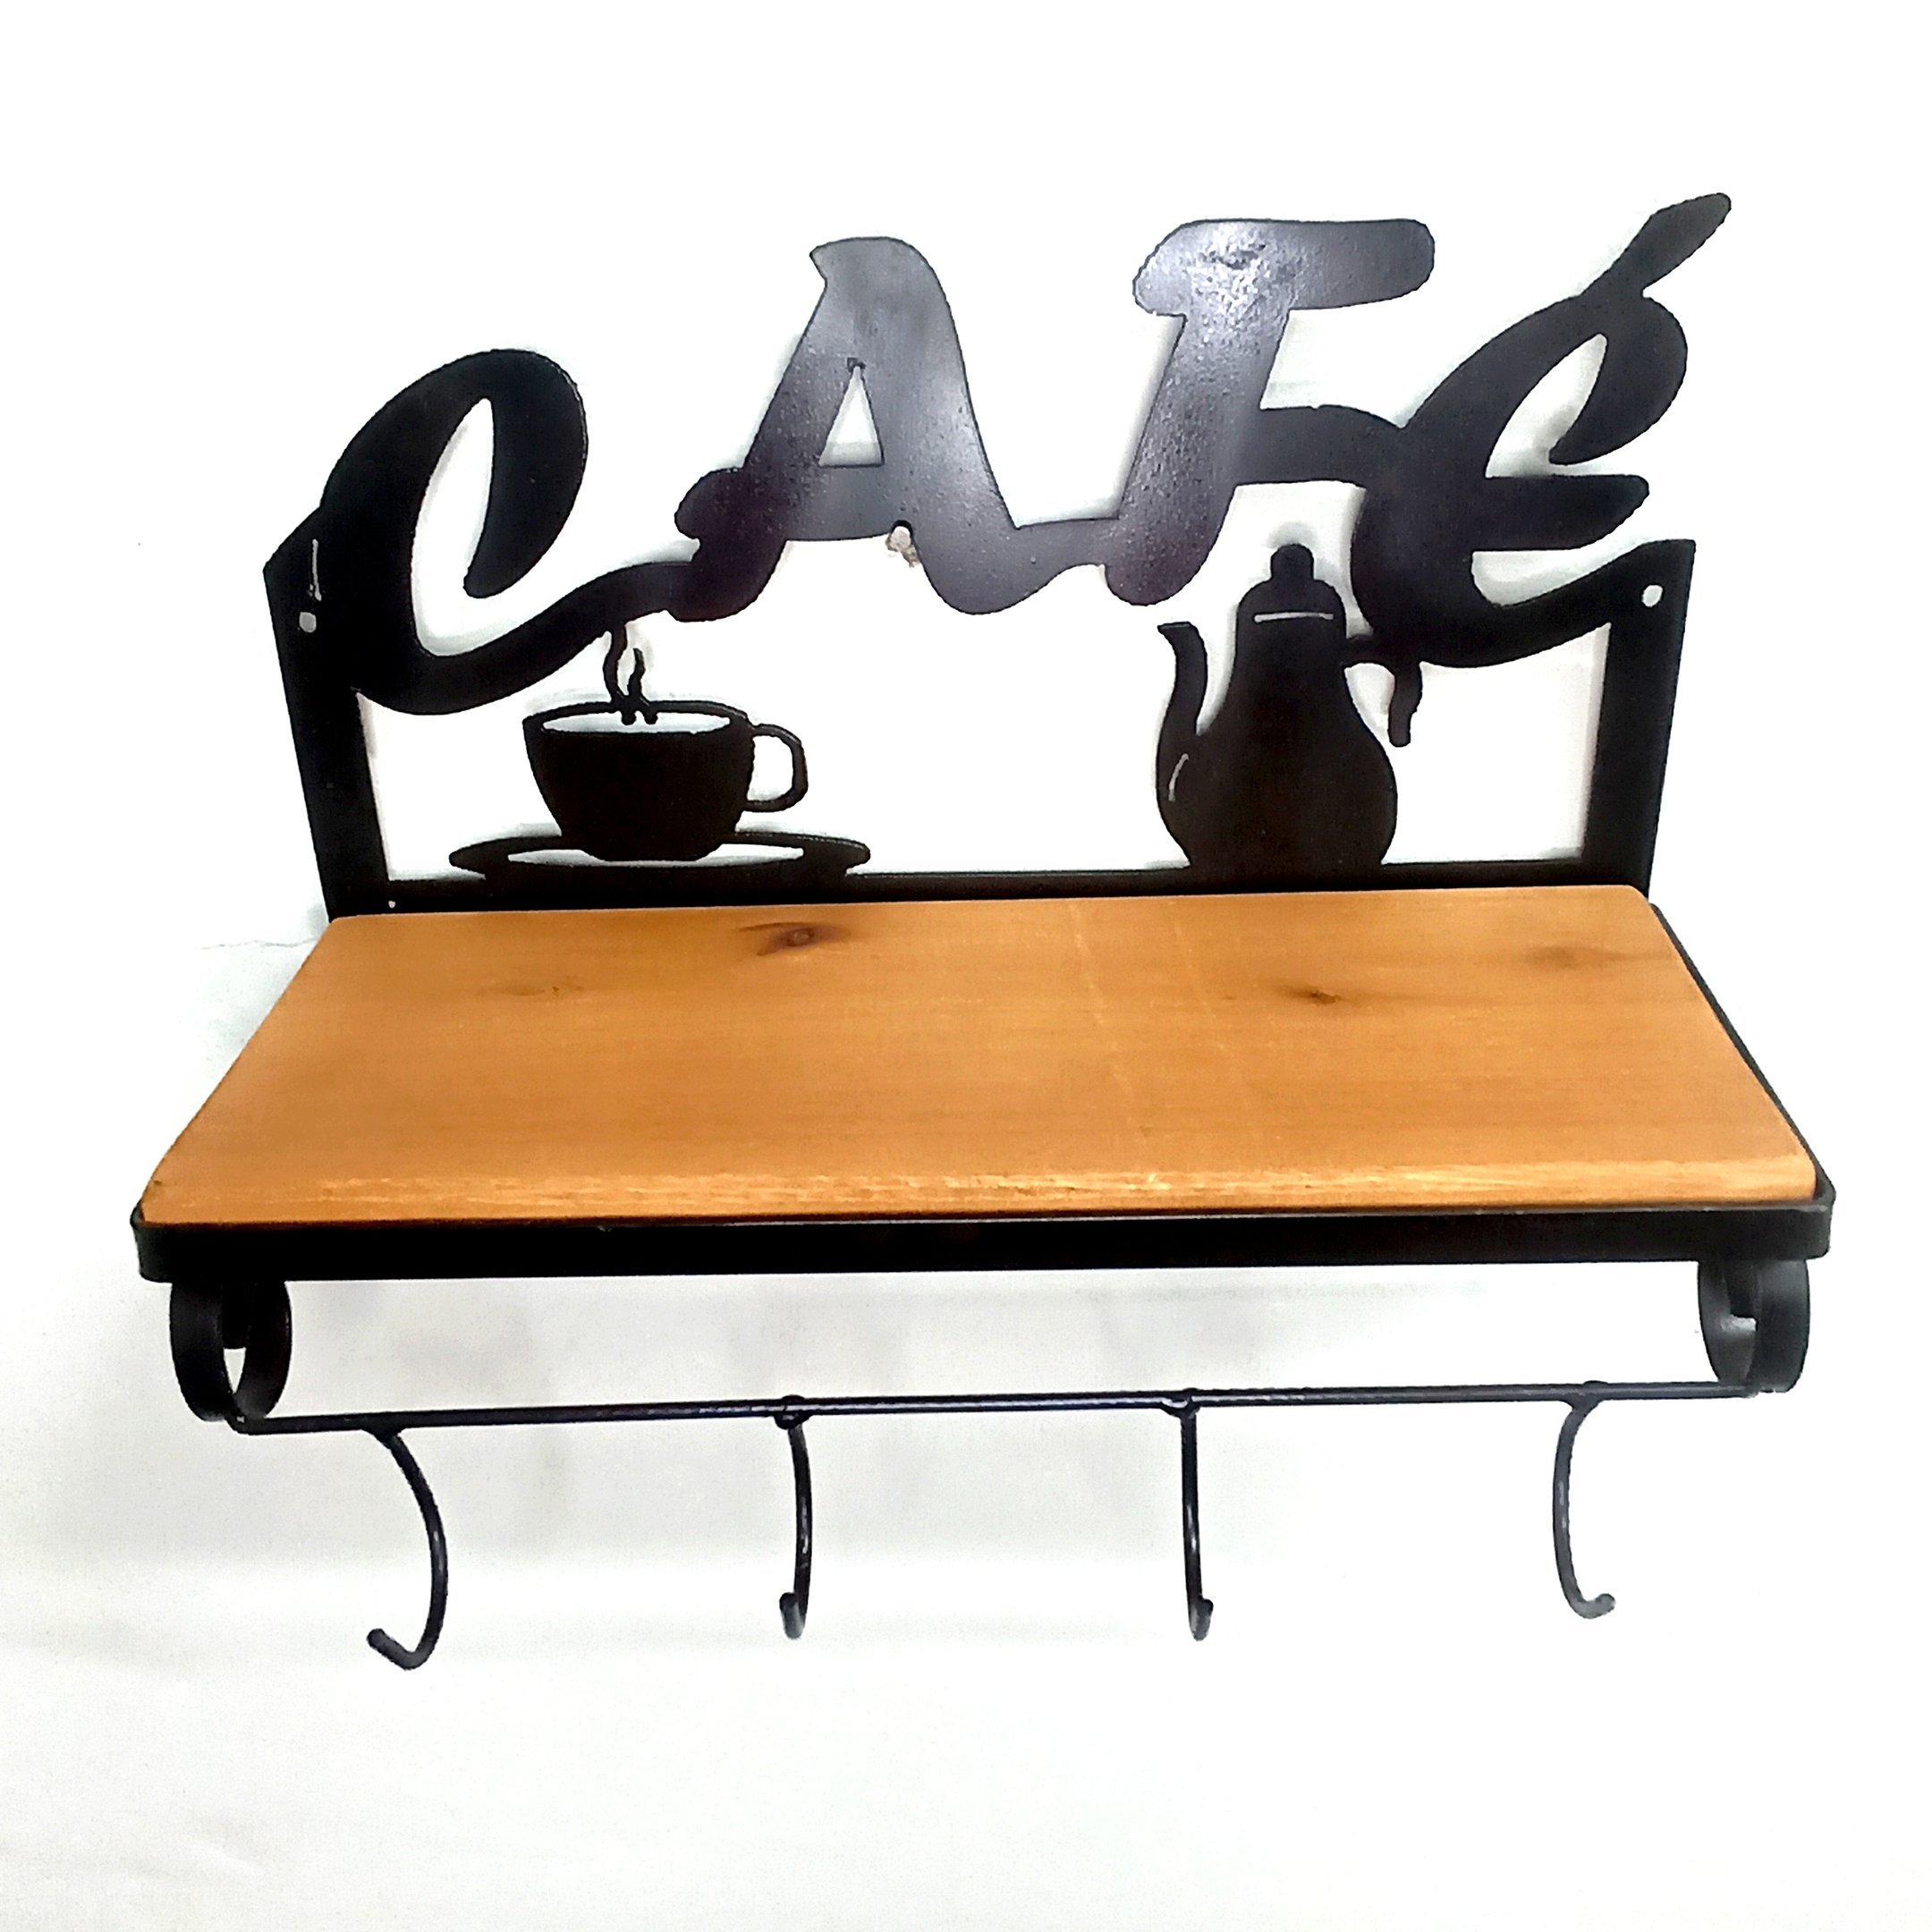 Prateleira cantinho do café suporte para xícaras e condimentos armário de cozinha aberto de parede f - 4